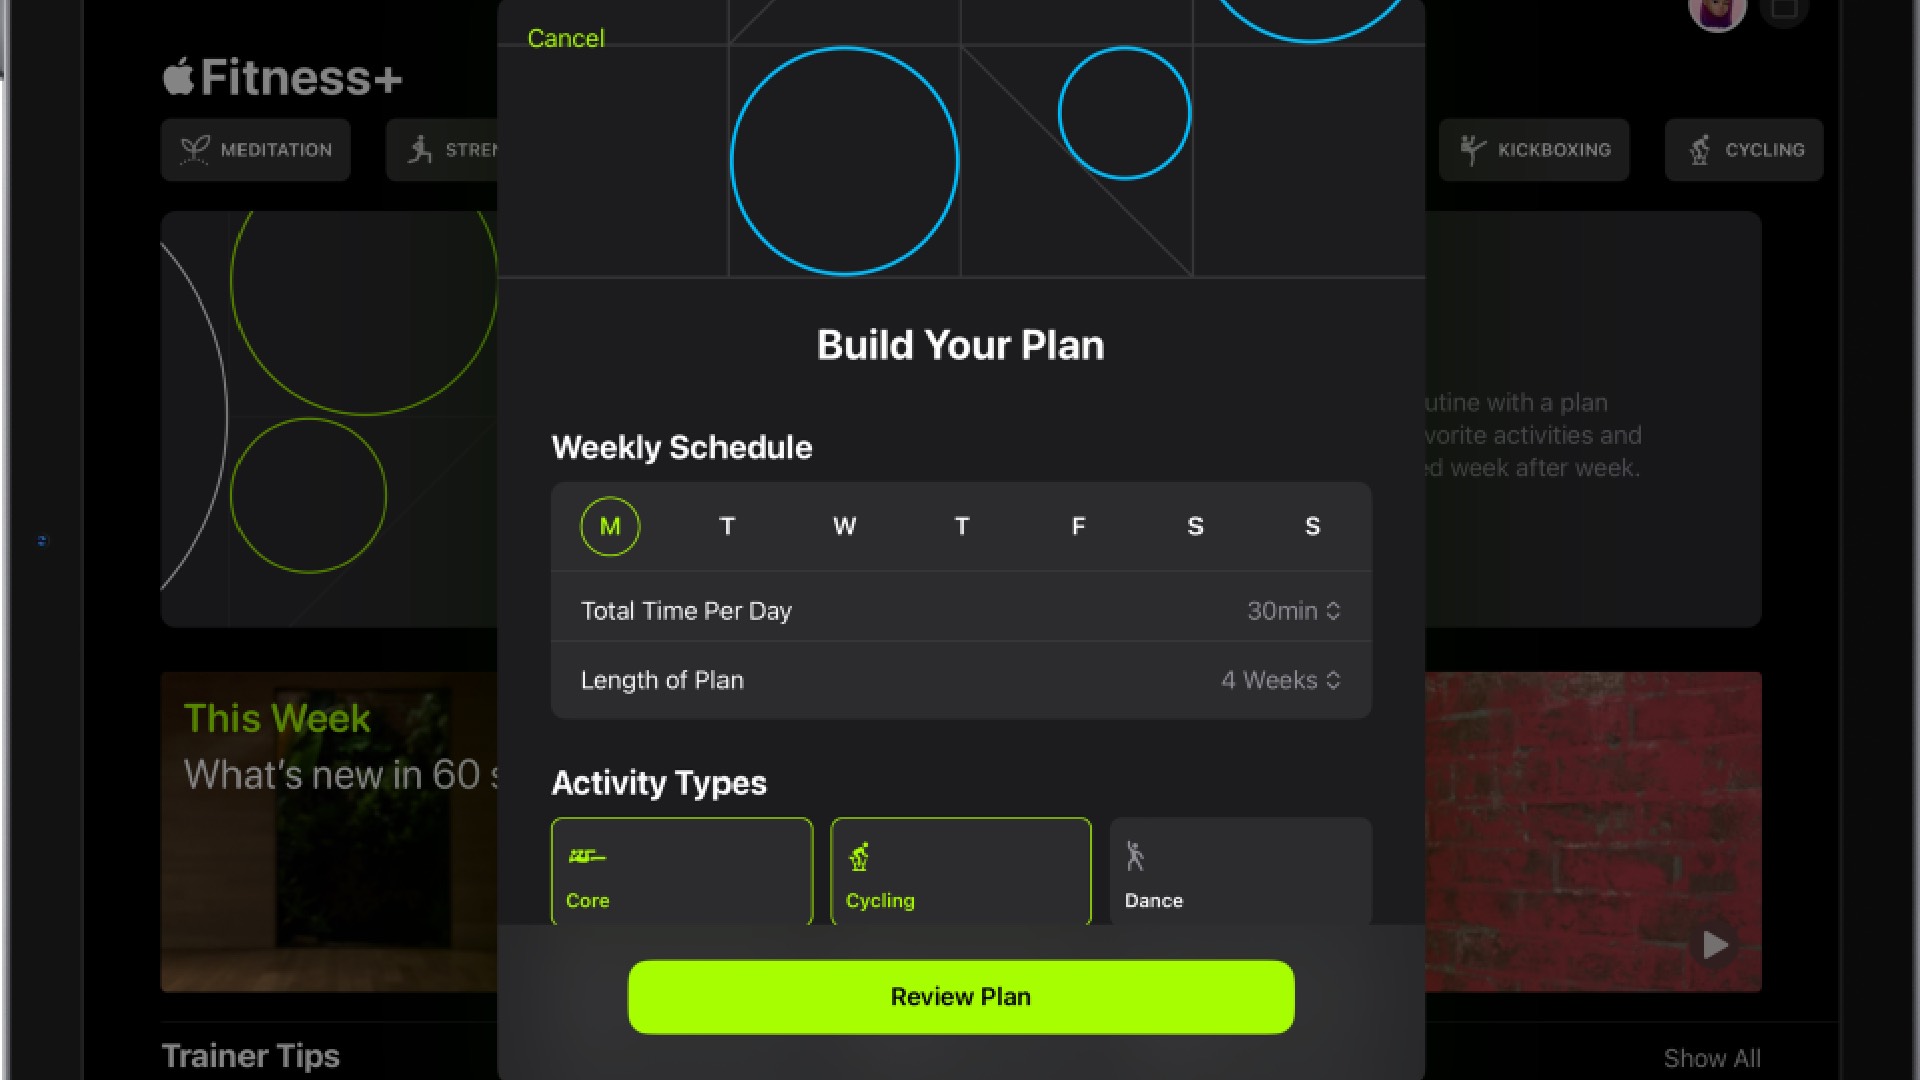 Custom plan options for fitness apps